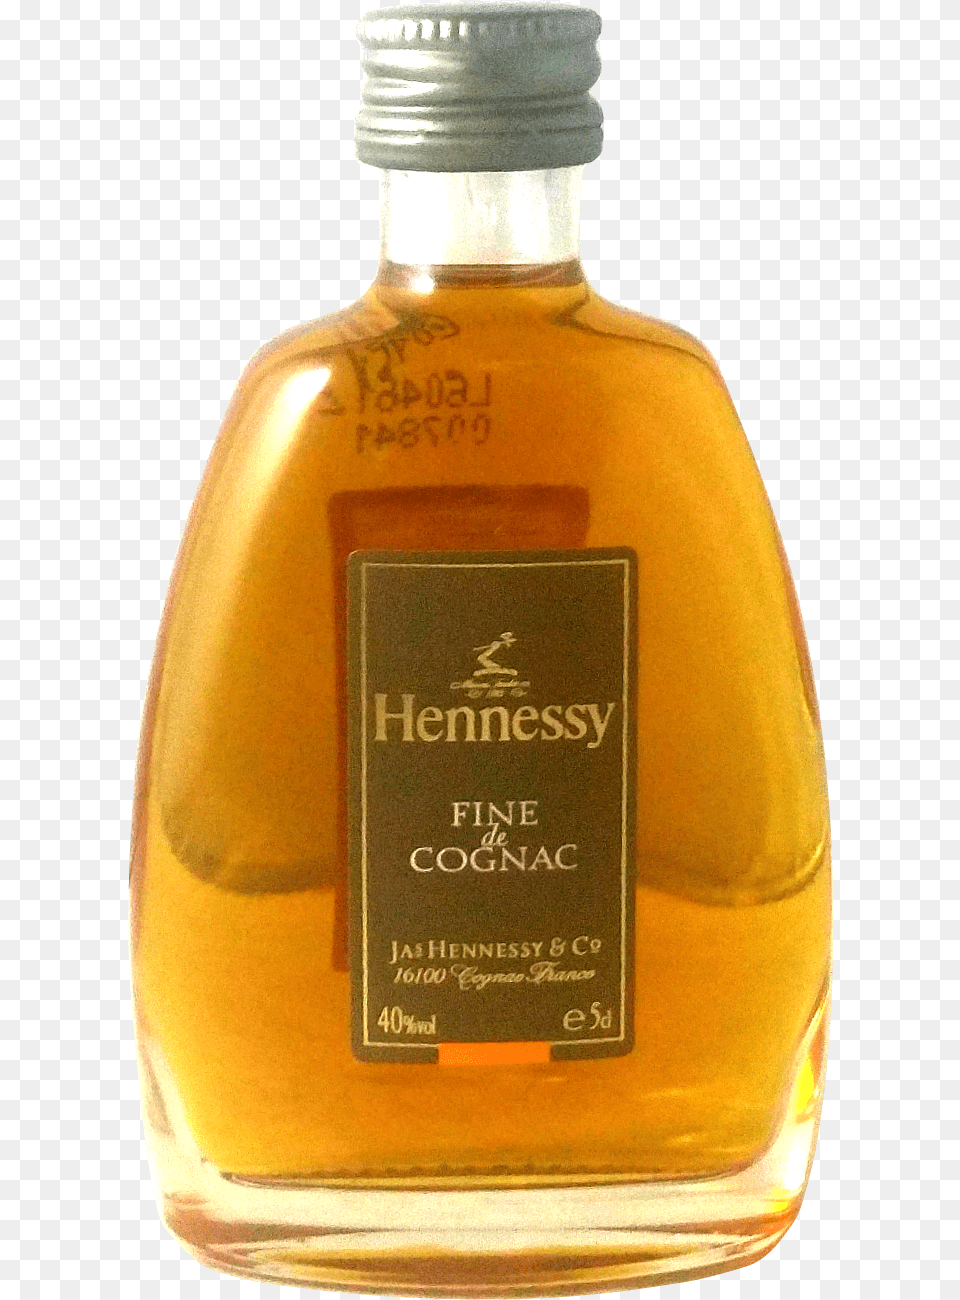 Hennessy Fine De Cognac Mini Domaine De Canton, Alcohol, Beverage, Liquor, Bottle Free Transparent Png